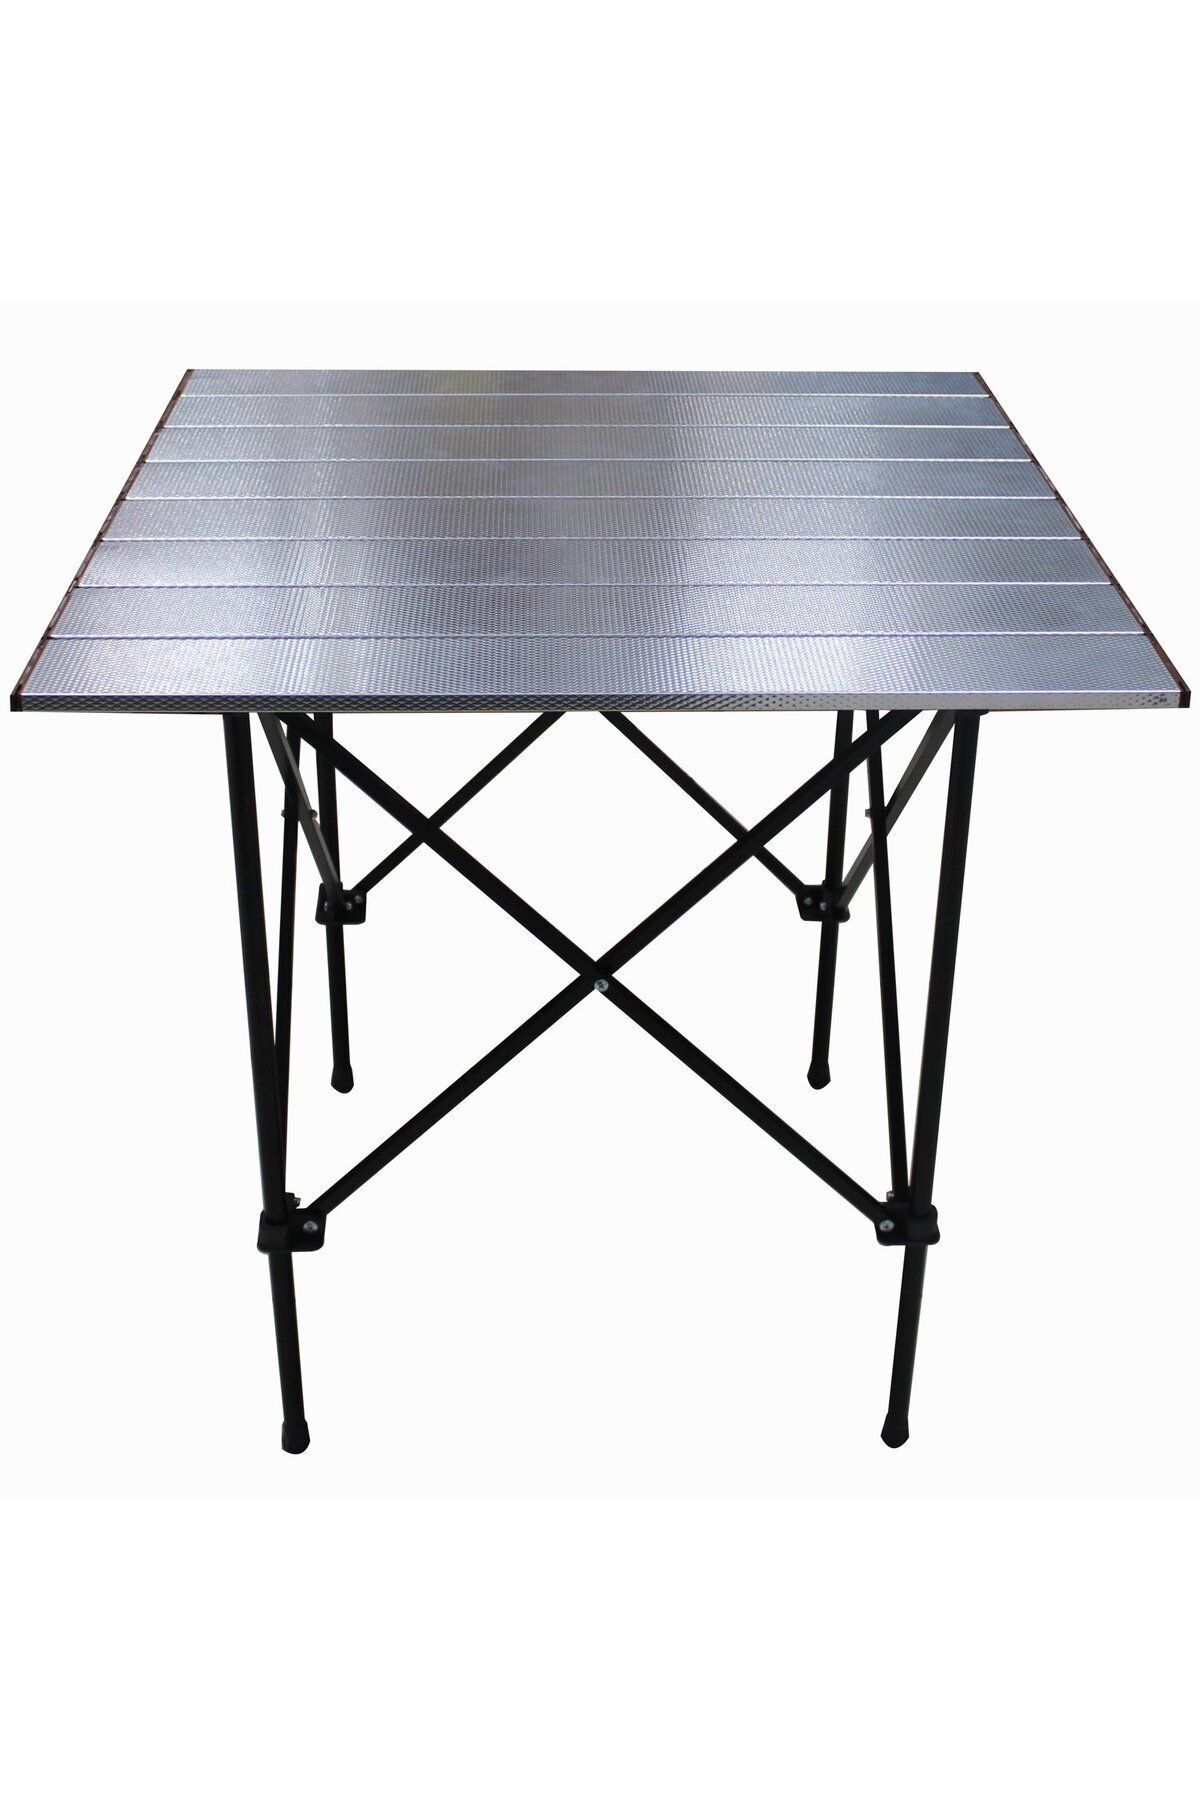 GRAY WOLF Alüminyum Katlanır Masa Balkon-Bahçe-Kamp-Piknik Masası (Taşıma Çantalı)